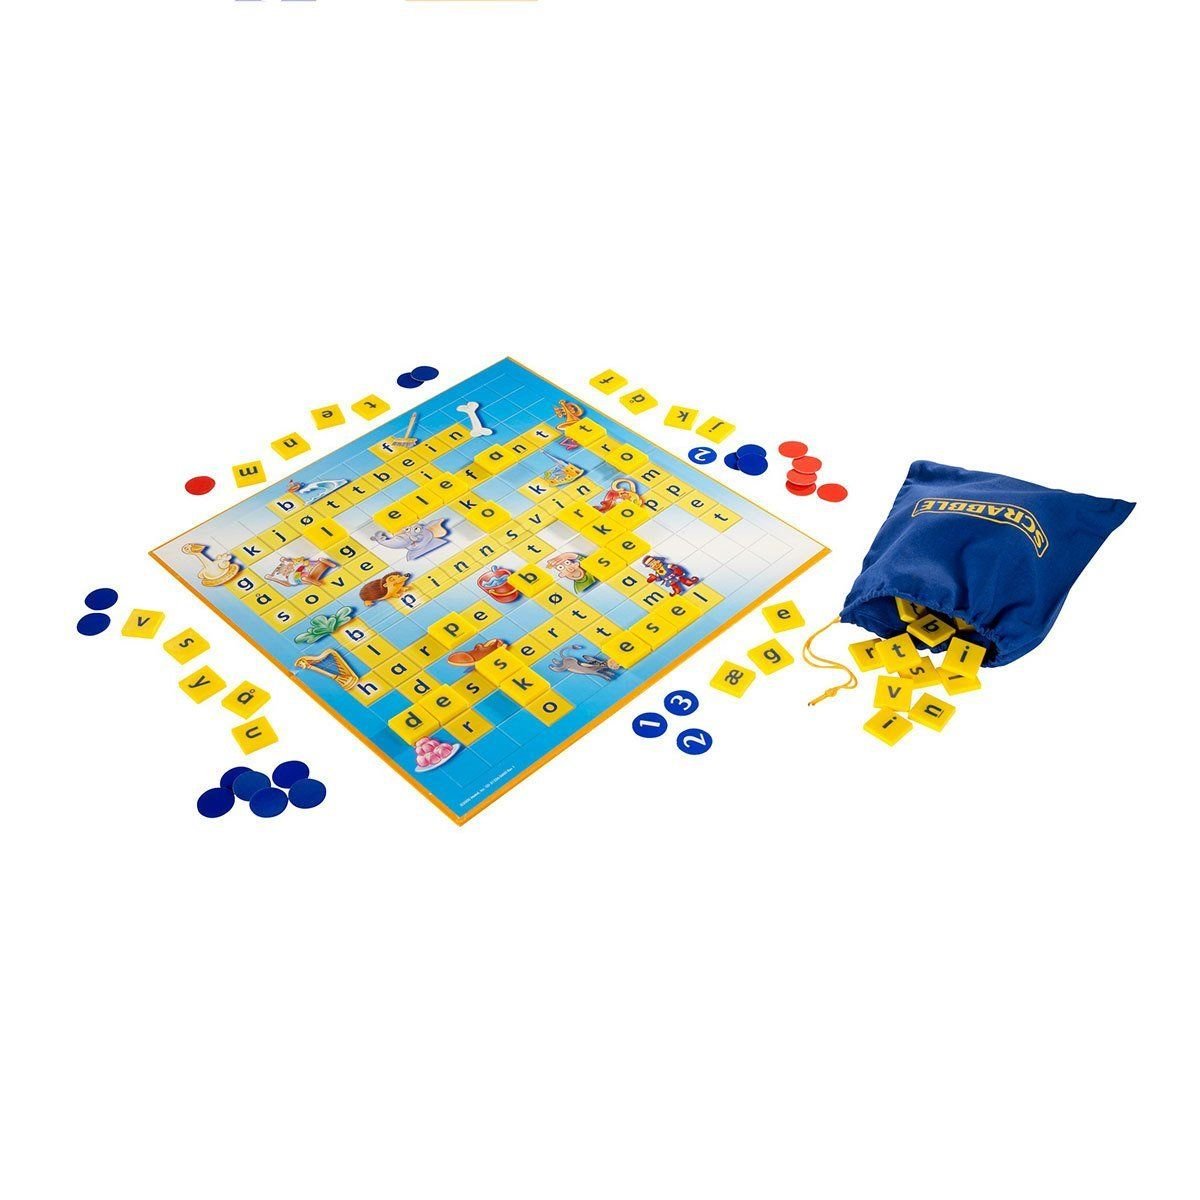 Scrabble Scrabble Junior Türkçe 6 10 Yaş Kutu Oyunları | Milagron 